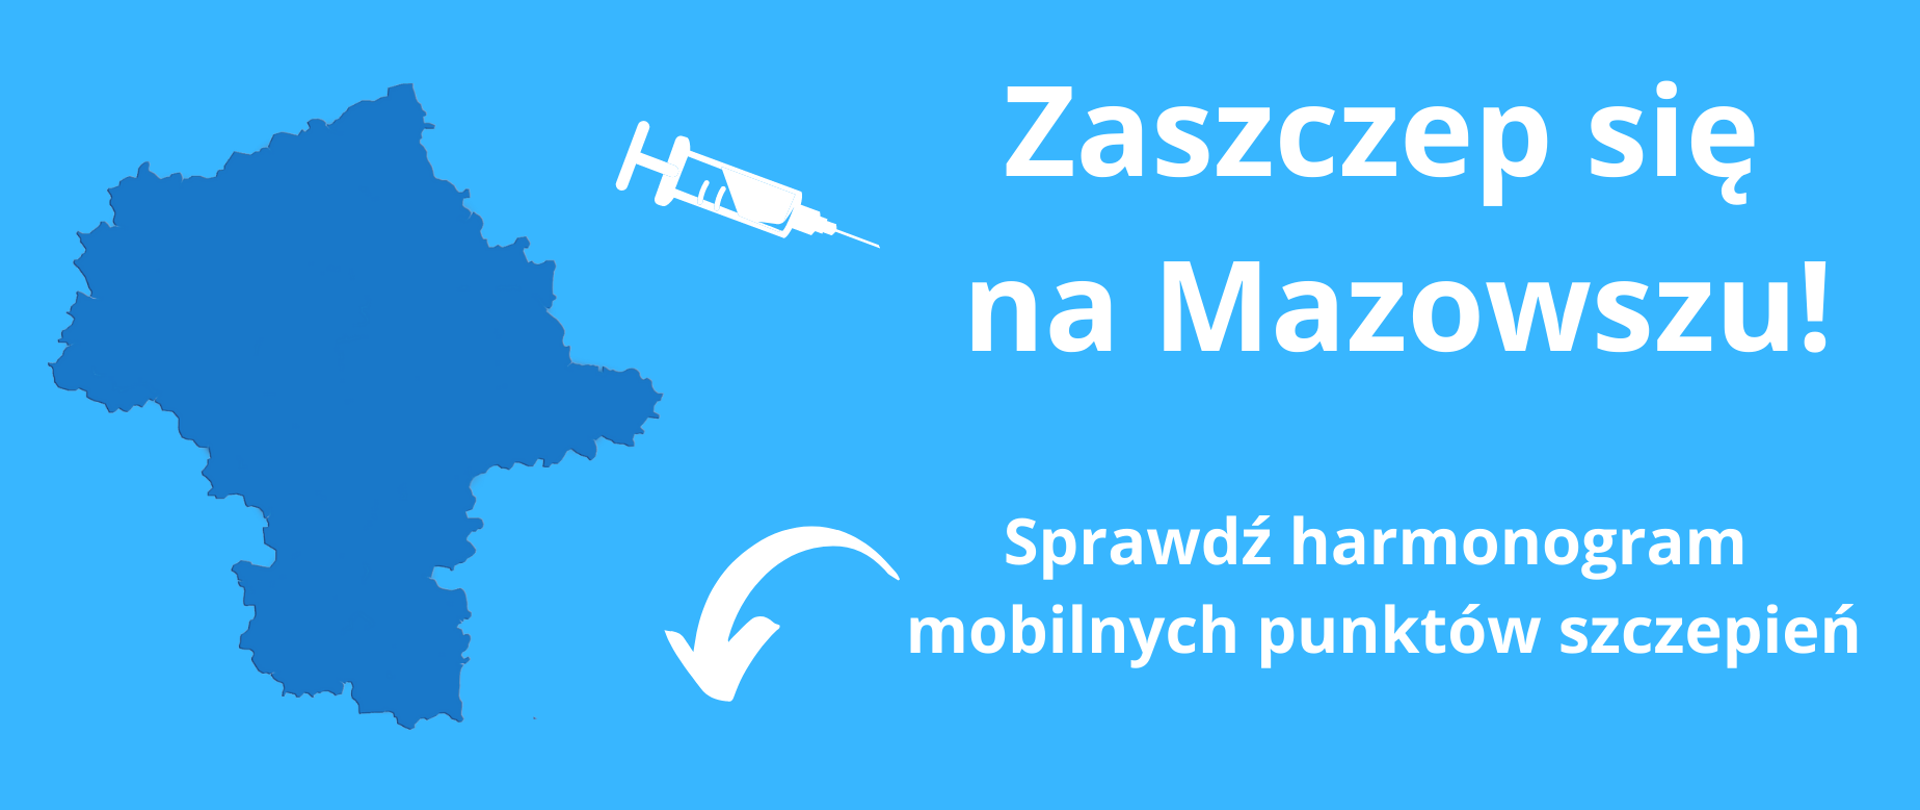 Zaszczep się na Mazowszu - trasa mobilnych punktów szczepień